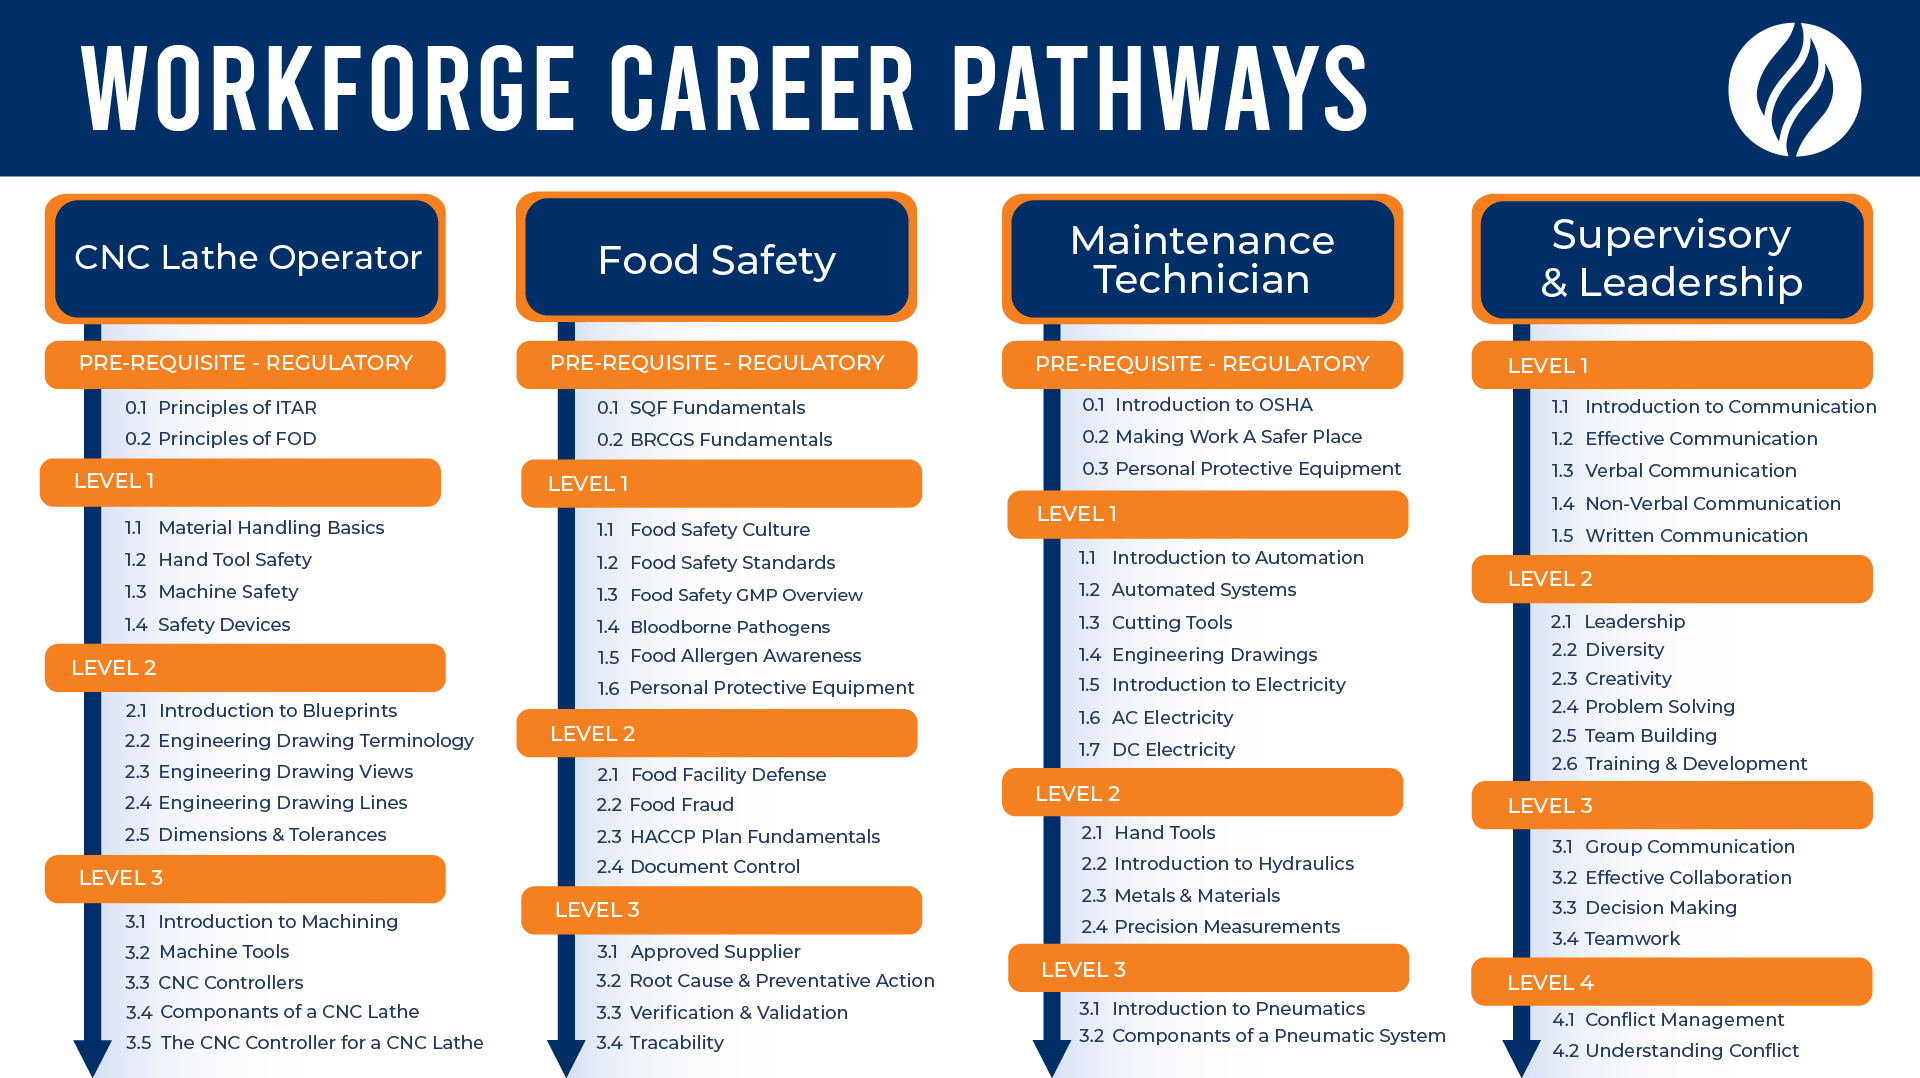 WorkForge Career Pathways